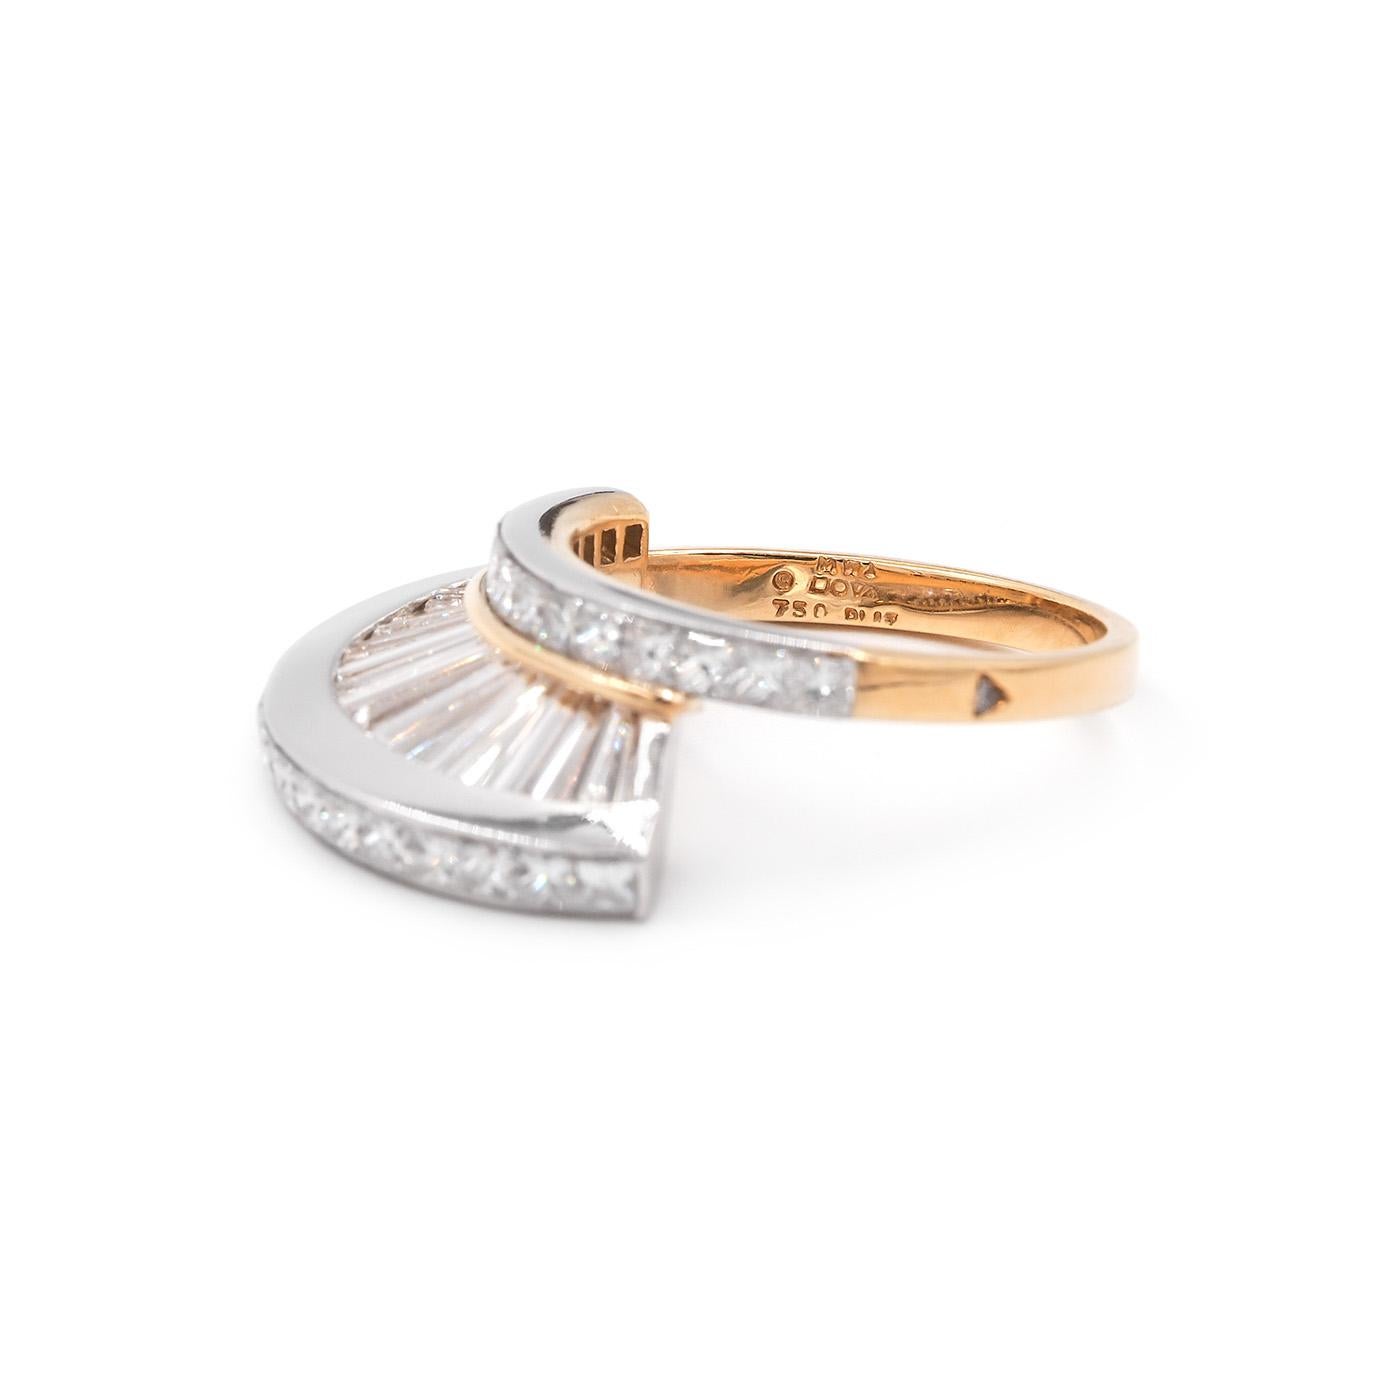 Vintage Baguette Cut & Princess Cut Diamond 'Fan' Ring Set by MWI Eloquence For Sale 5